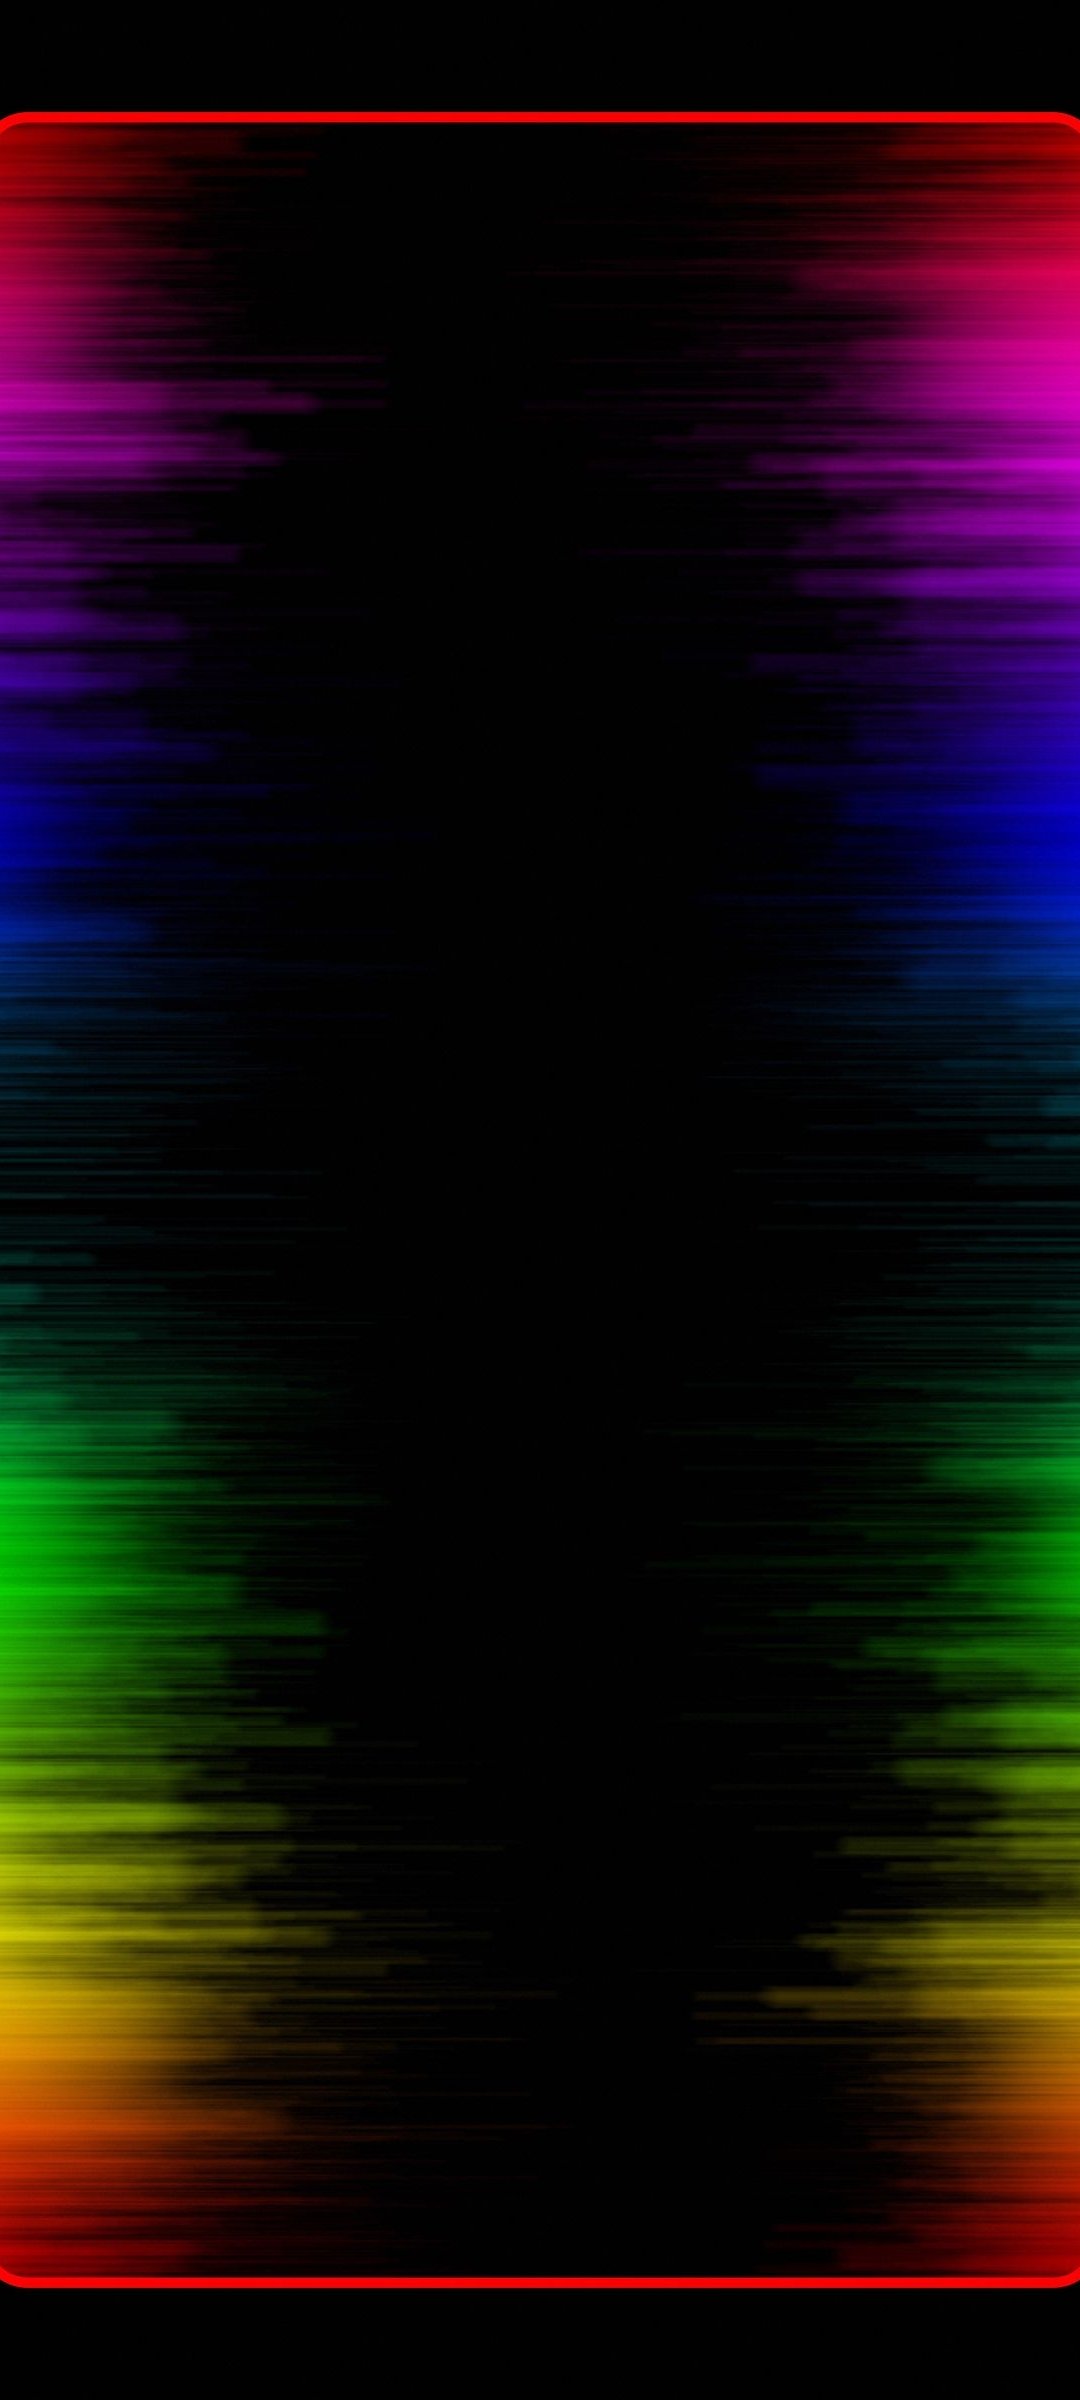 Dark Hexagonal Neon Border Wallpaper  IPhone Wallpapers  iPhone Wallpapers